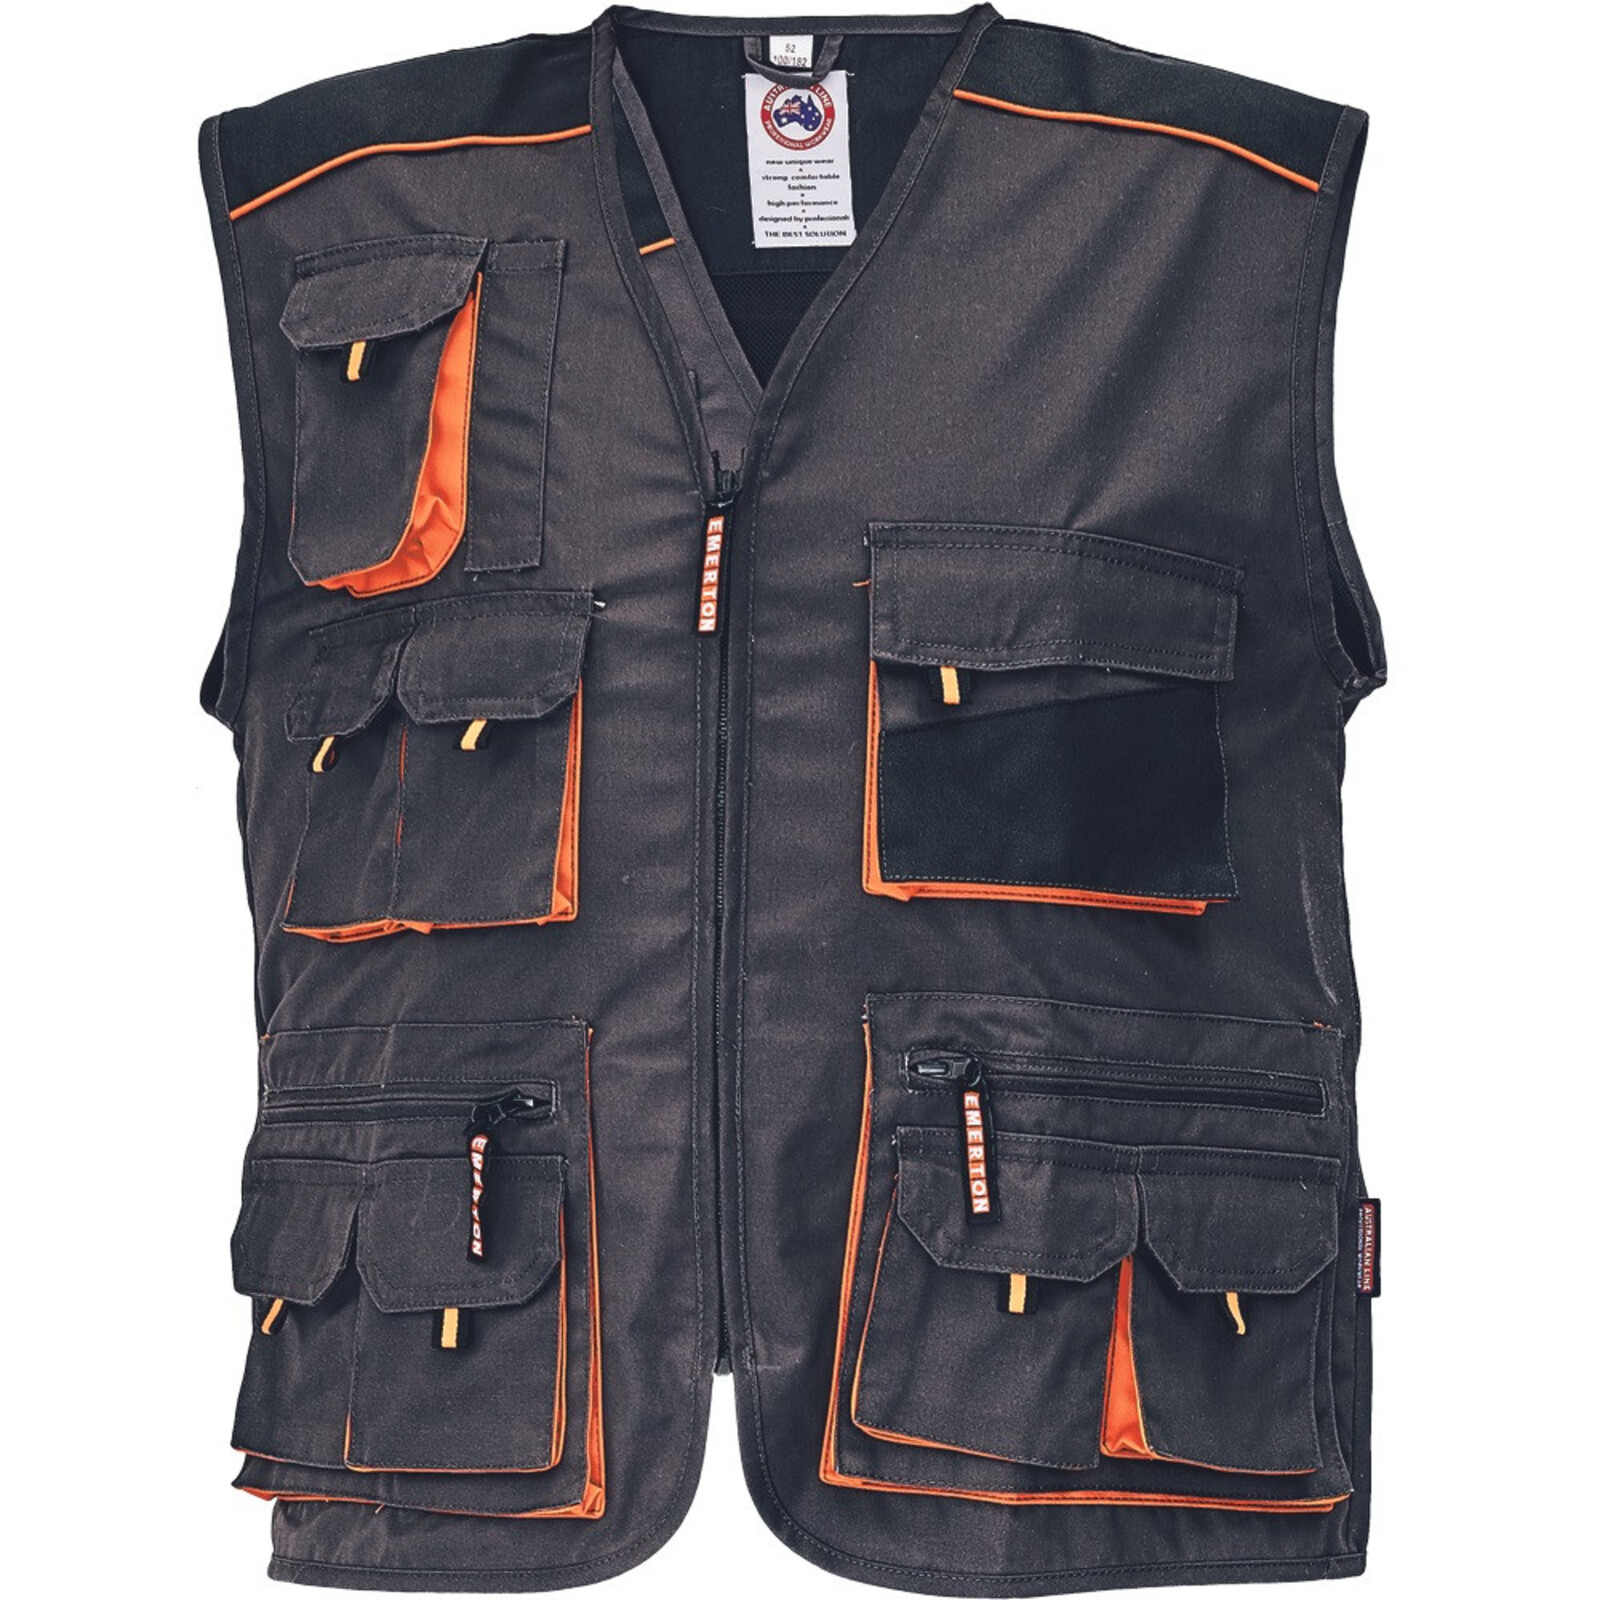 Odolná montérková vesta Emerton pánska - veľkosť: 56, farba: čierna/oranžová